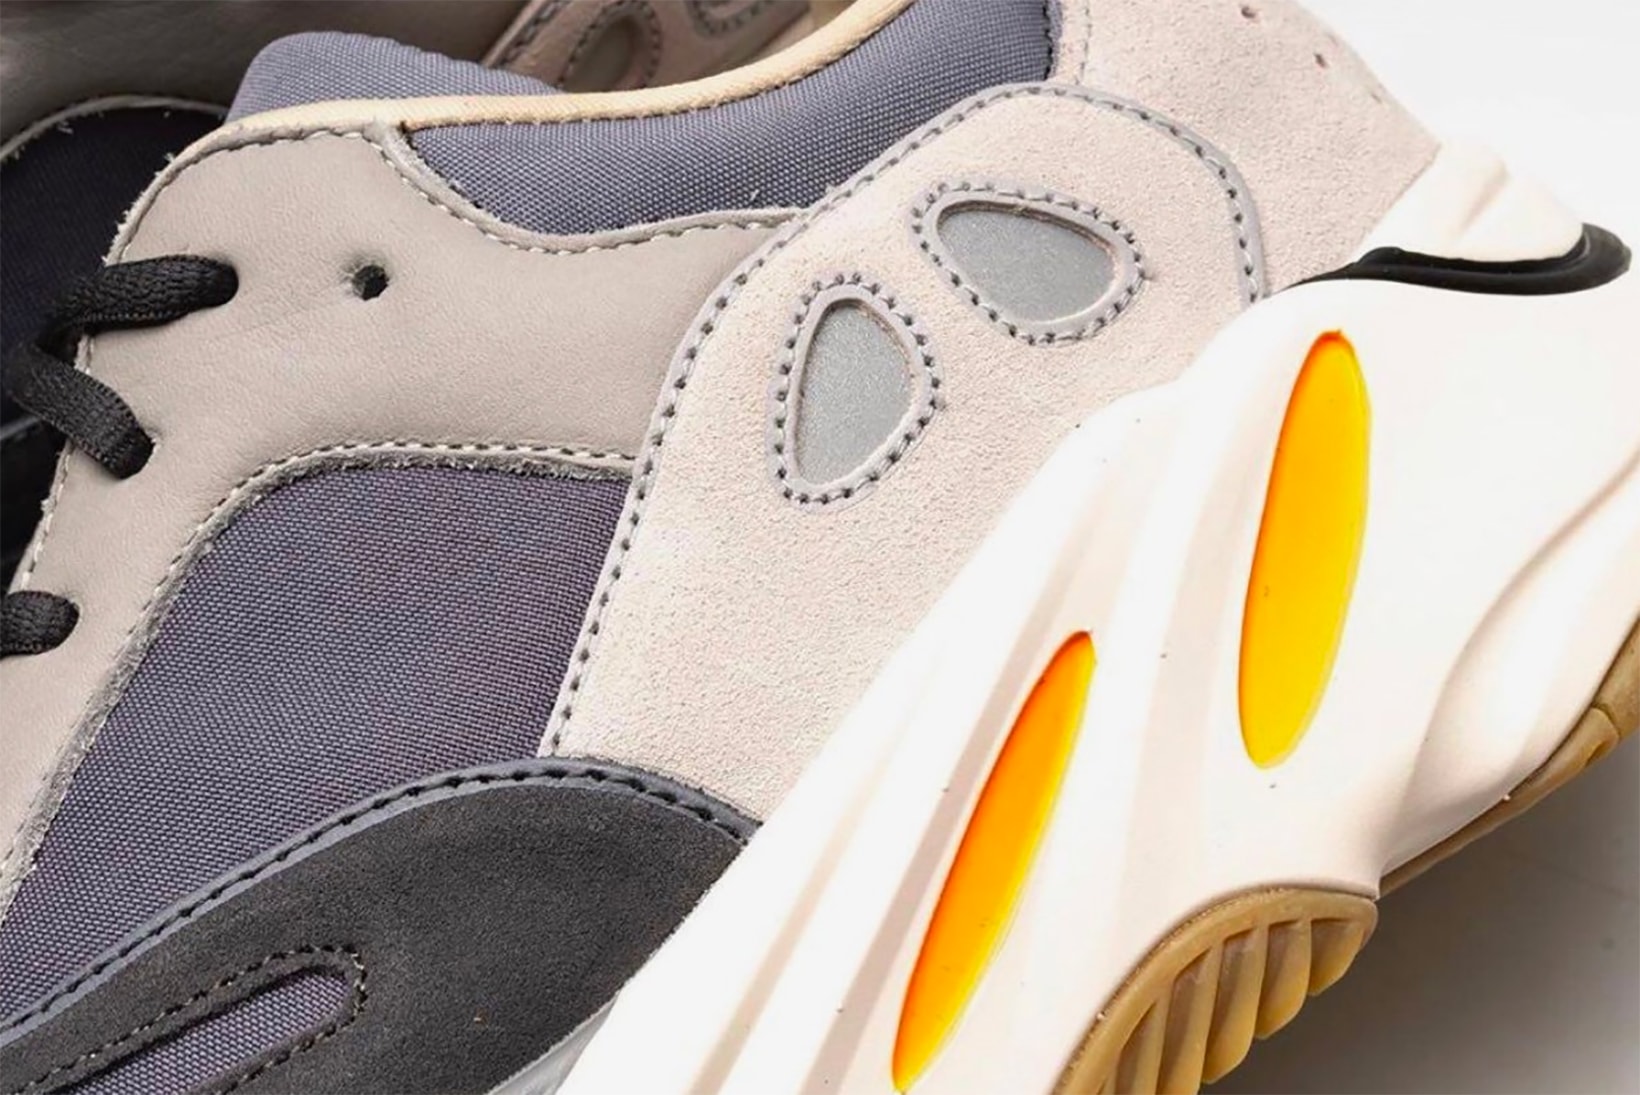 adidas yeezy boost 700 magnet kanye west sneakers shoes footwear sneakerhead first look